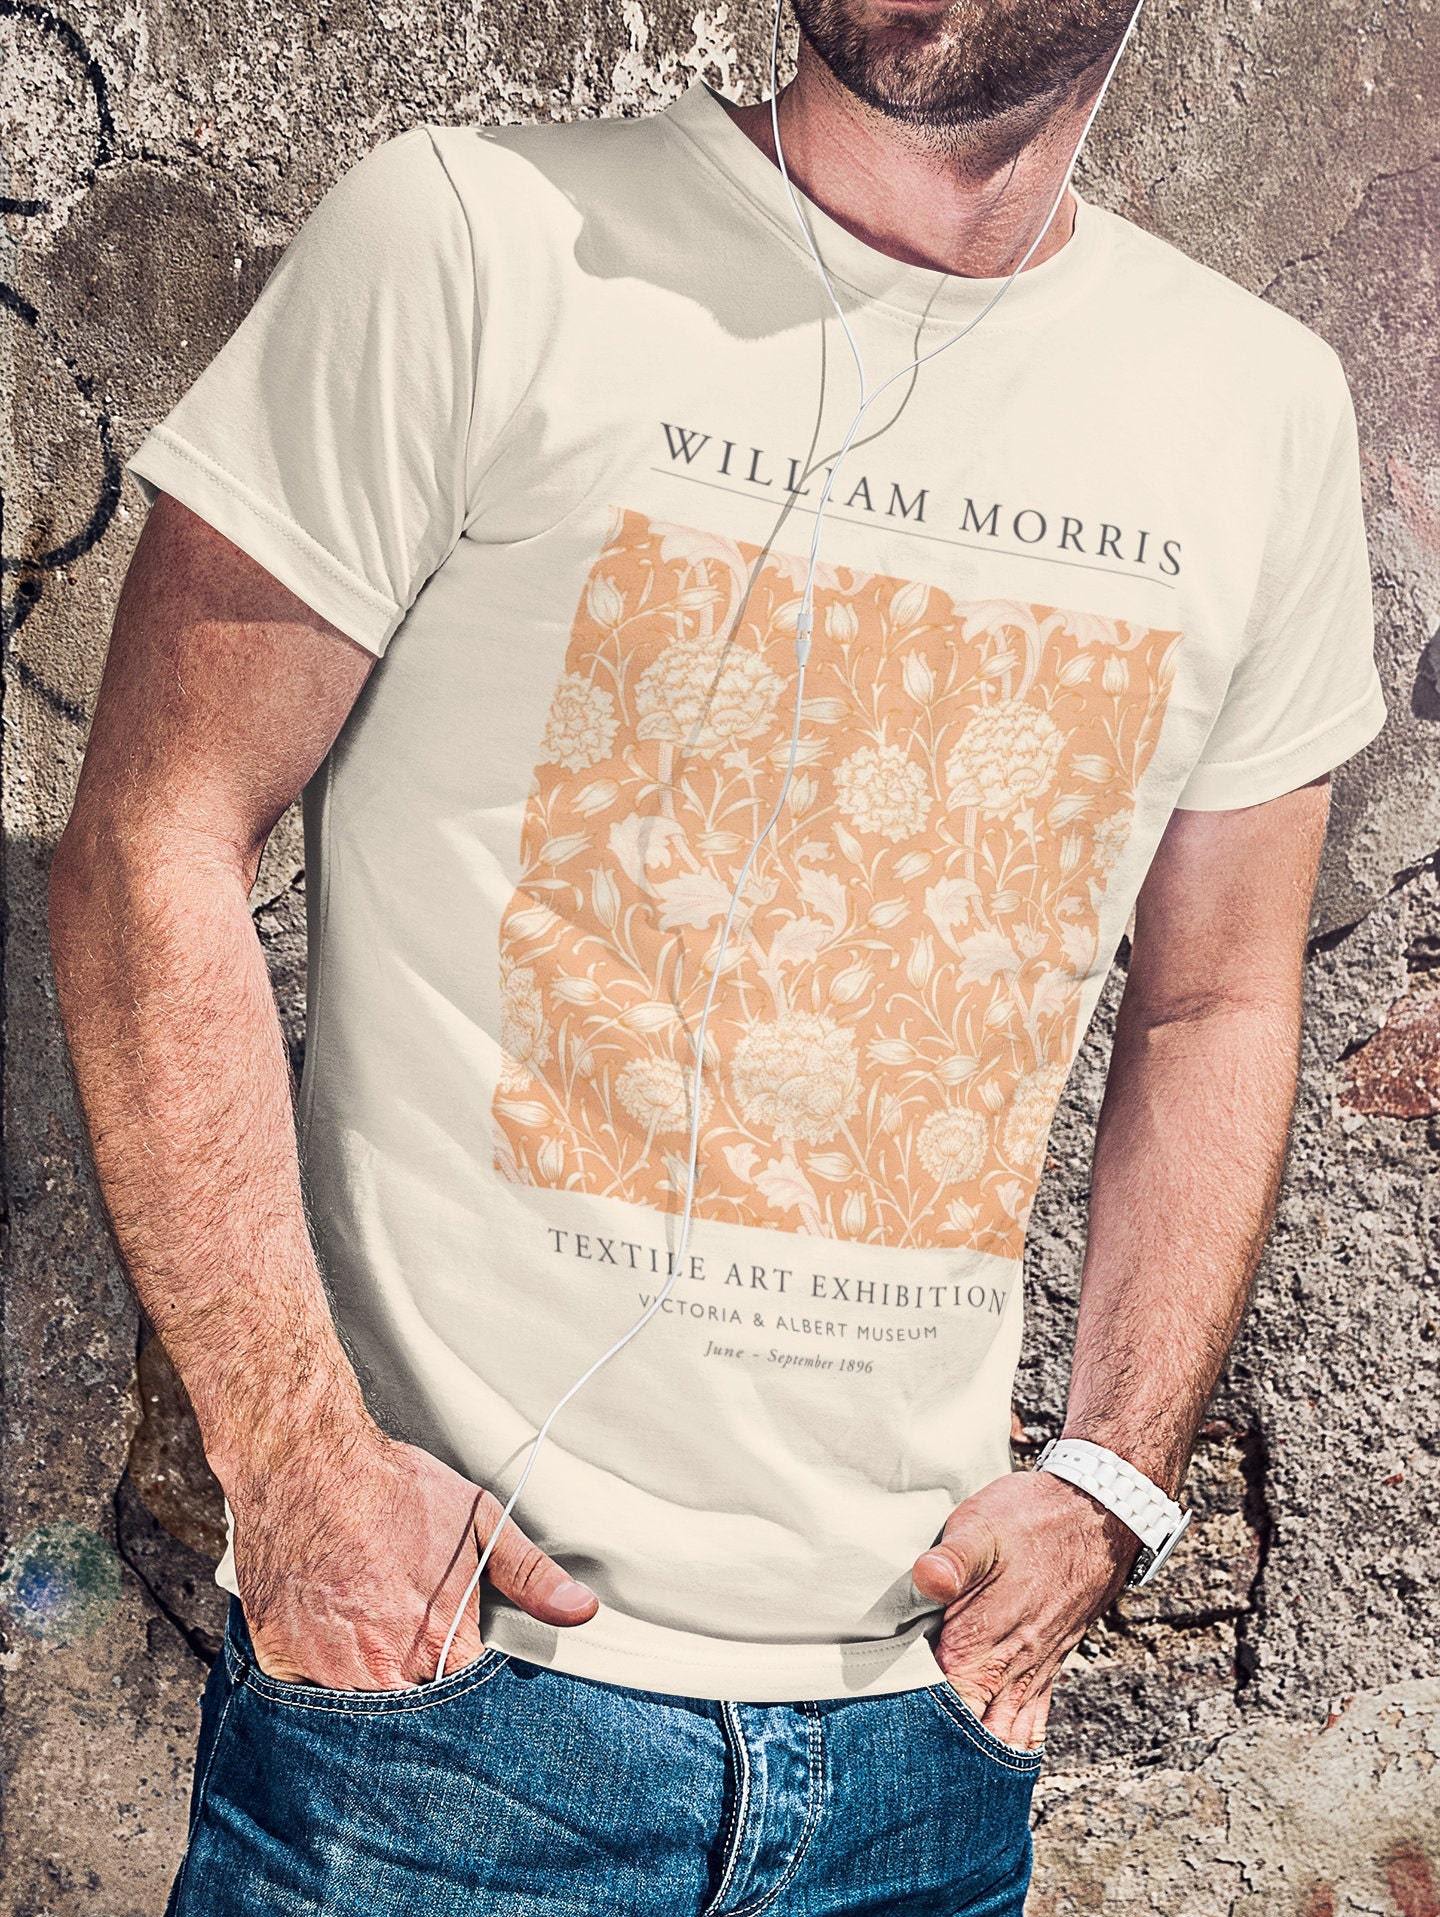 WILLIAM MORRIS - T-shirt d'exposition de tulipes sauvages